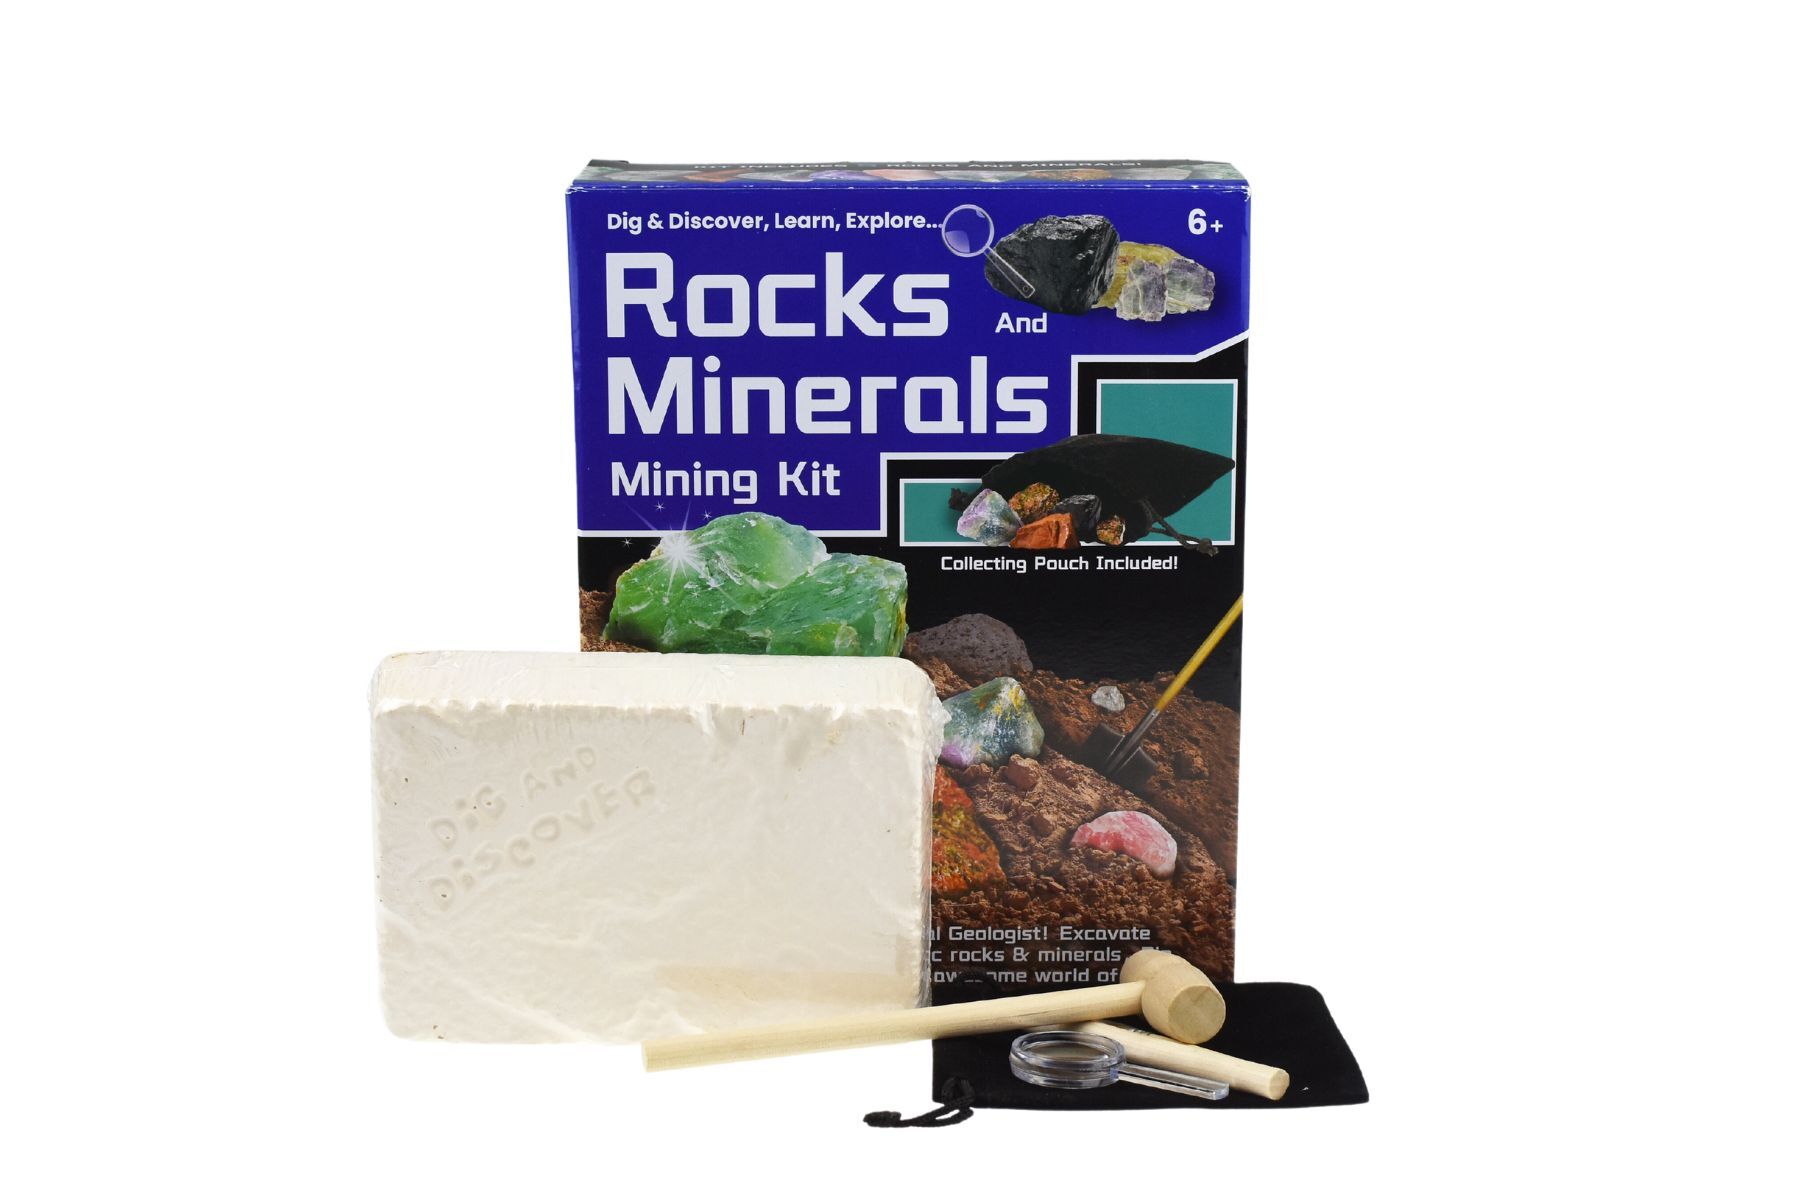 Dig & Discover Rocks And Minerals Mining Kit - Kids Mega Mart